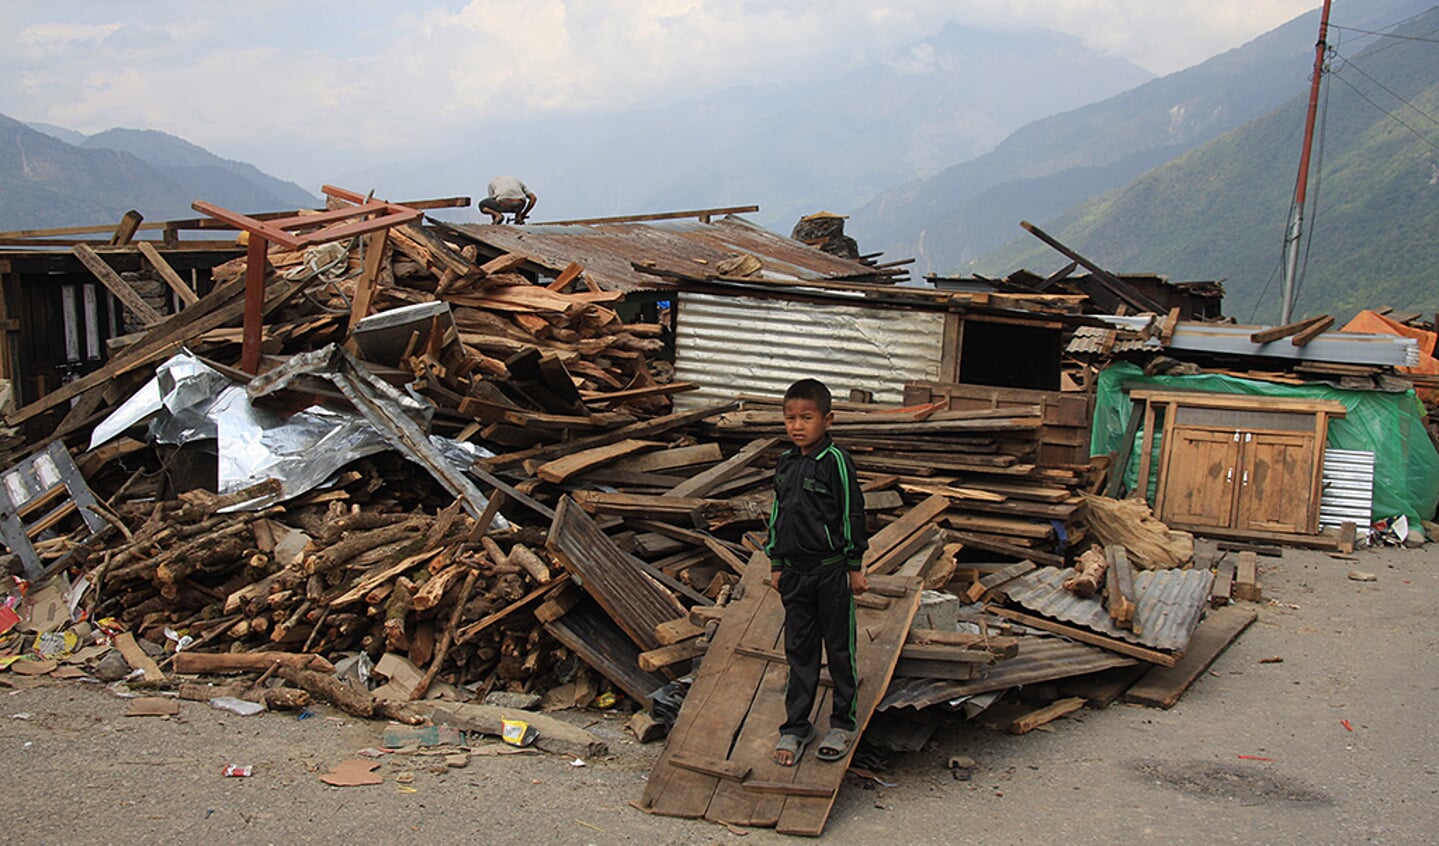 De Highlow Rangers willen in november helpen met de wederopbouw van door de aardbeving verwoeste dorp van Sherap Sherpa.